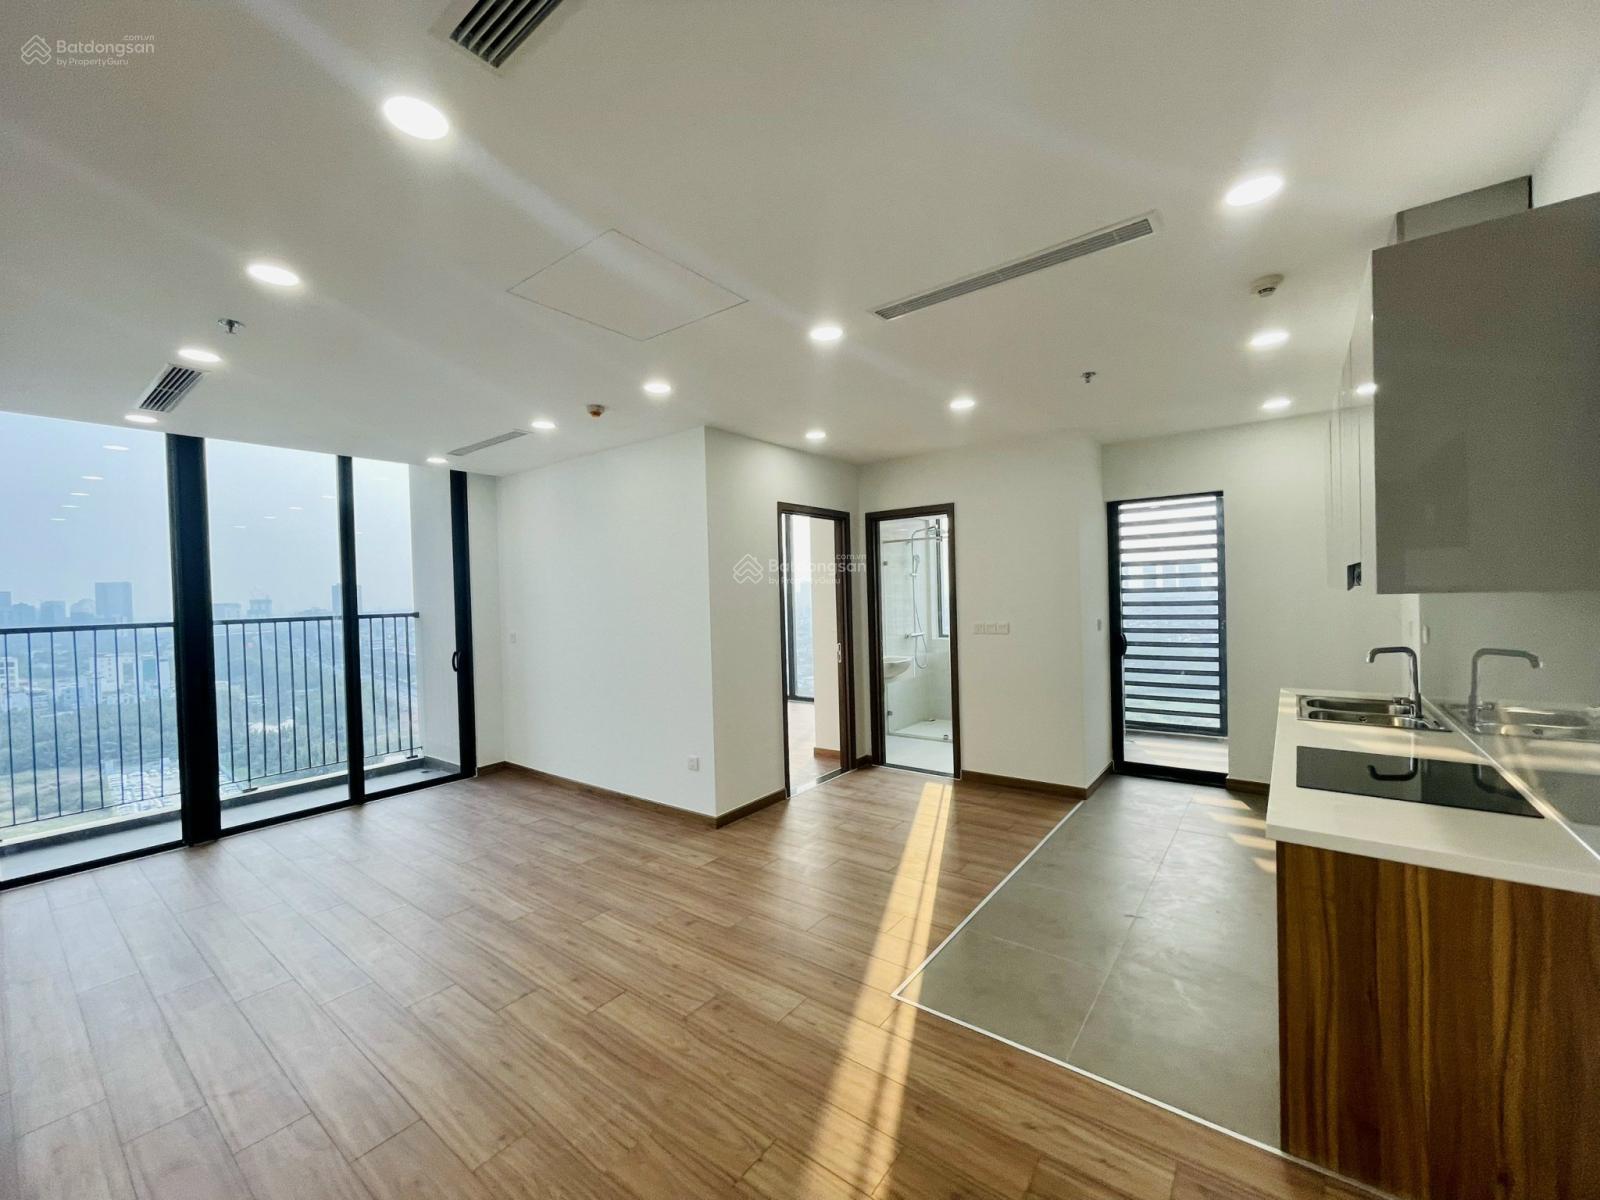 Chuyên quản lý cho thuê căn hộ Eco Green SG Q7, 2pn 70m2, giá 12tr/th, xem nhà 24/7, lh 0901 318 ***